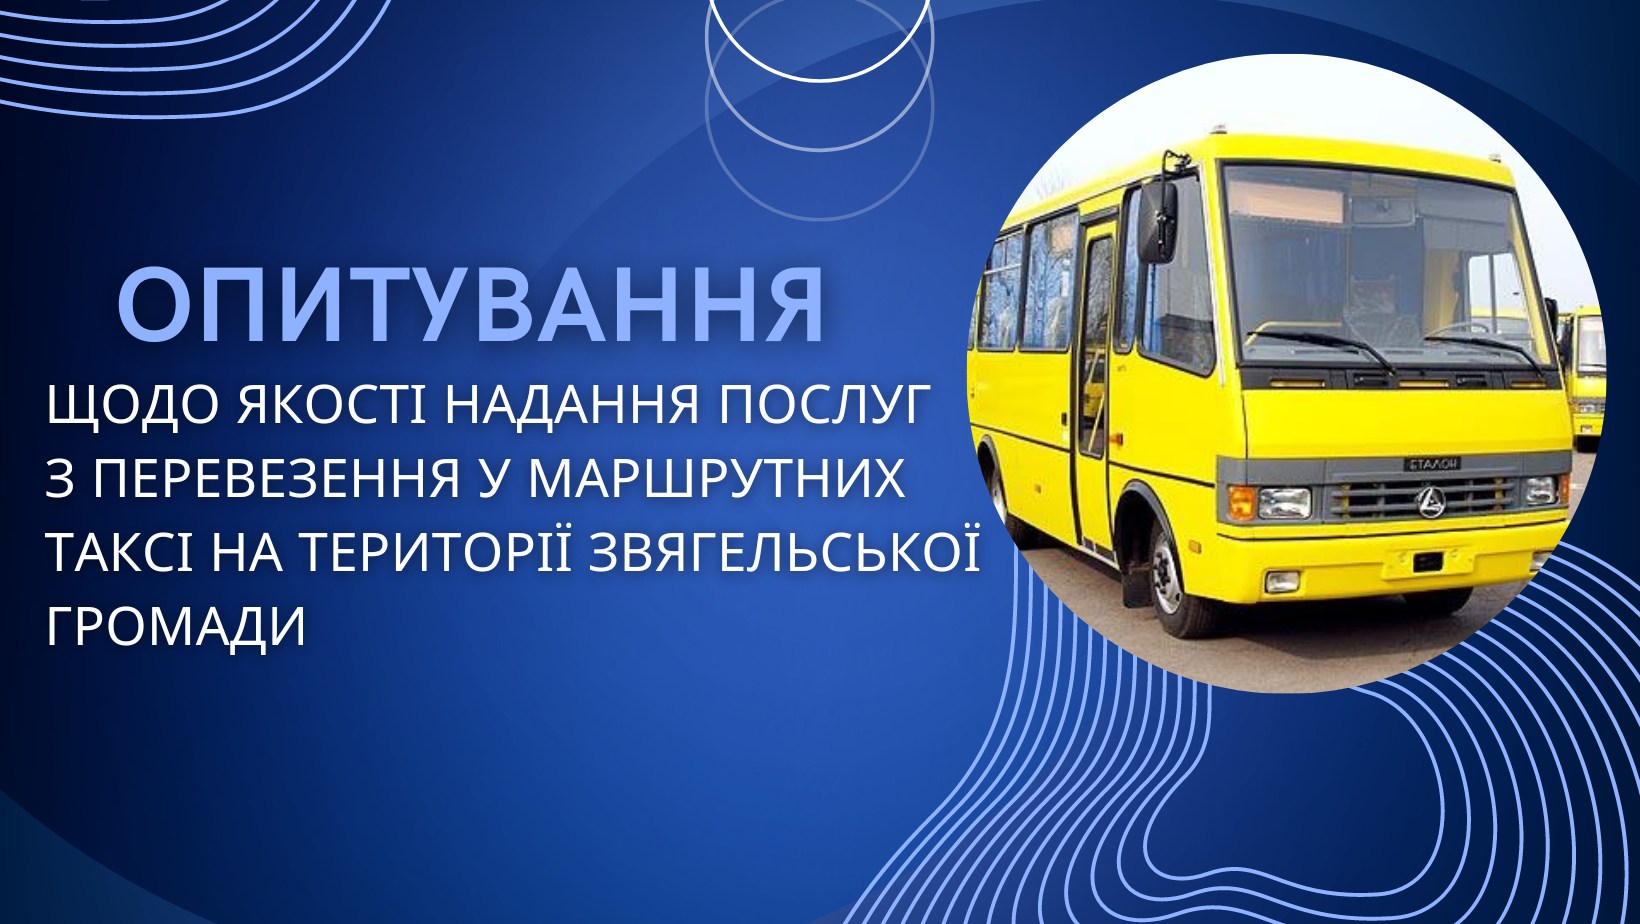 Опитування щодо якості надання послуг з перевезення пасажирів у громадському транспорті на території Звягельської громади